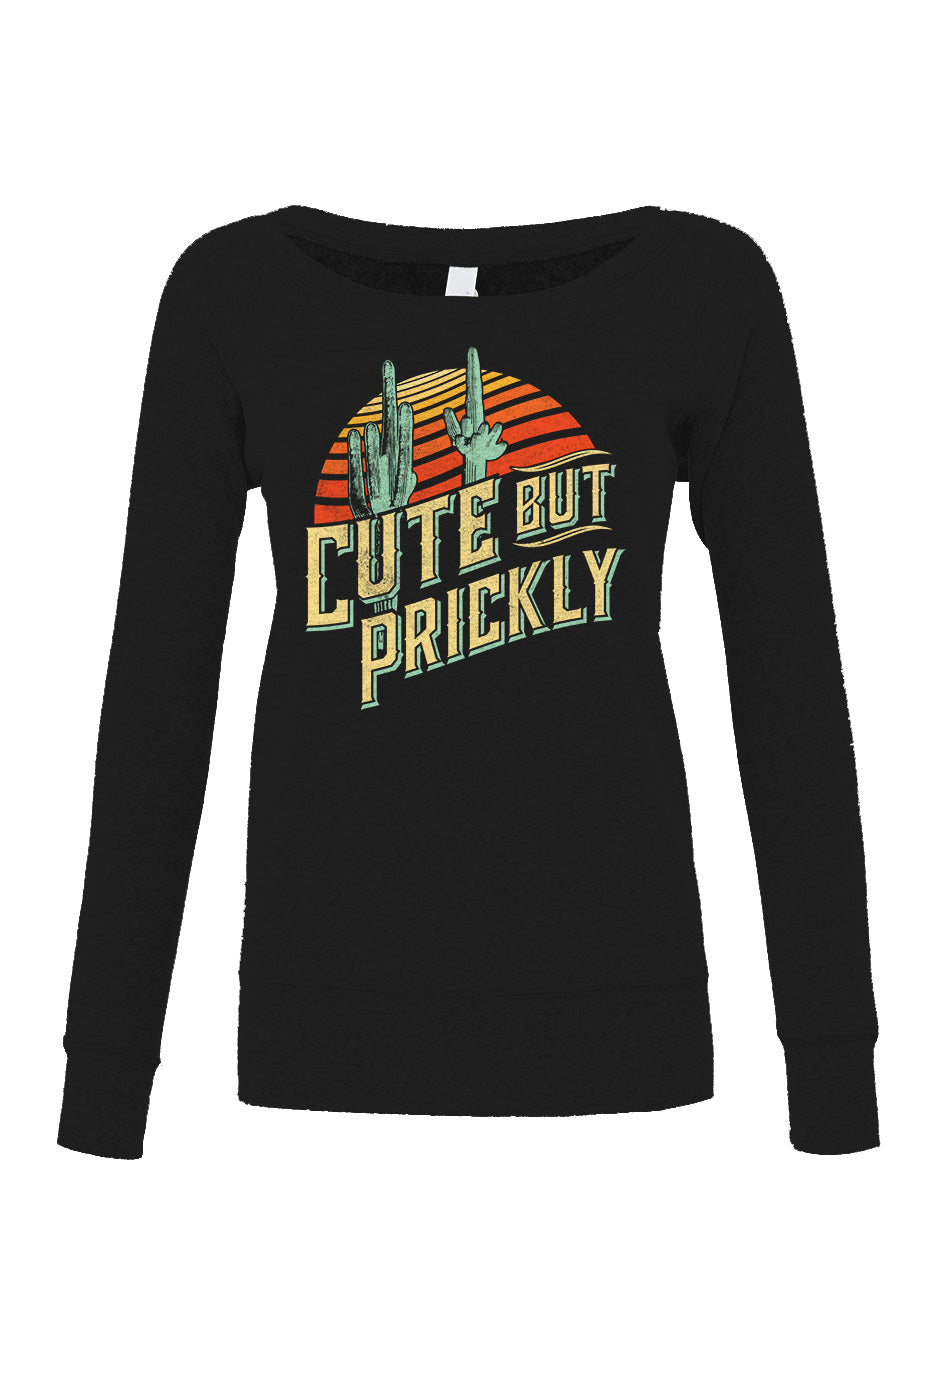 Women's Cute But Prickly Scoop Neck Fleece - Cactus Shirt